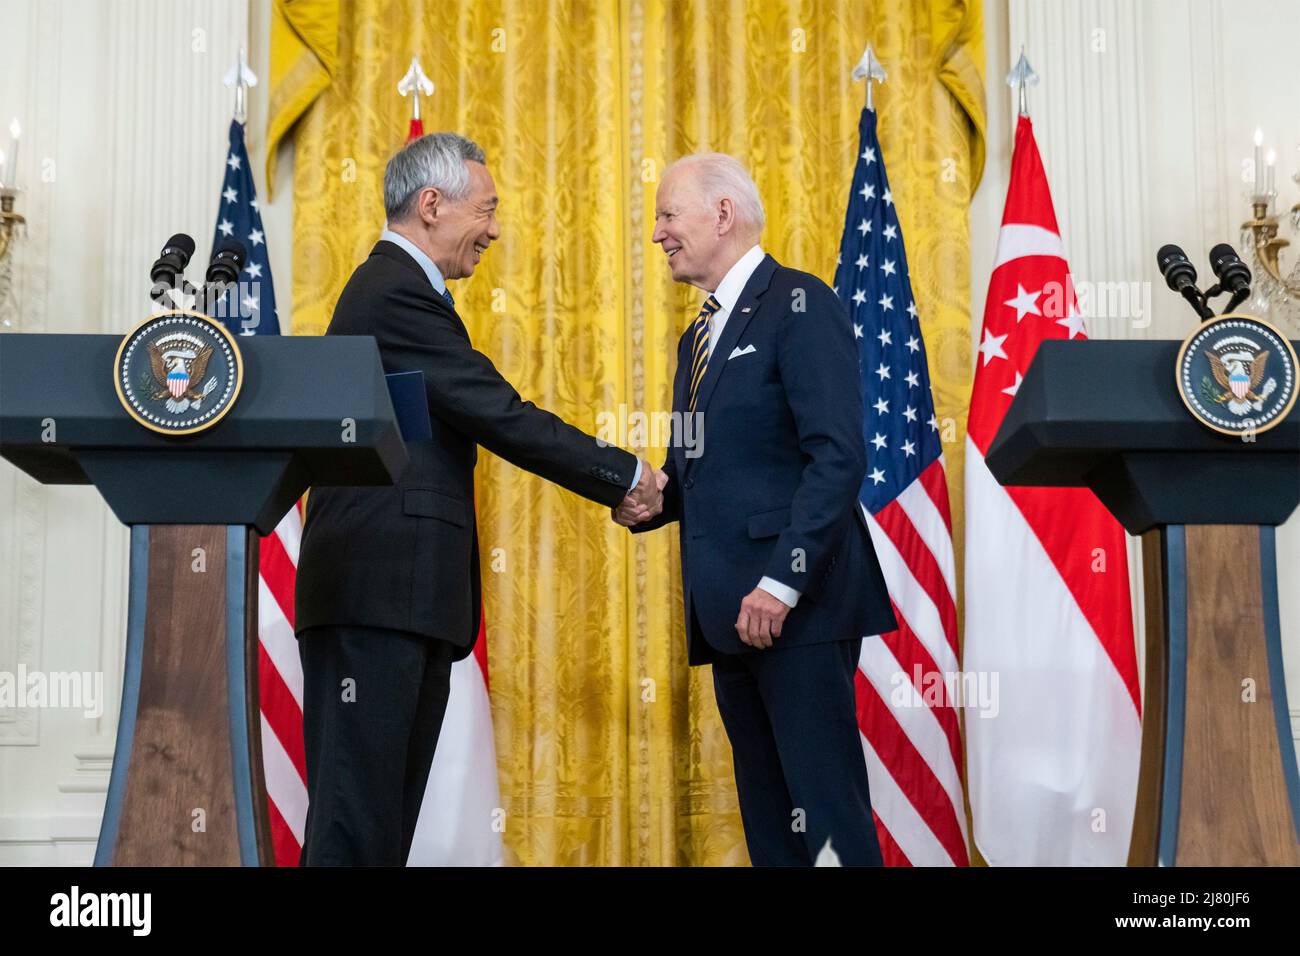 Joe Biden, Presidente de los Estados Unidos, sacude las manos con el Primer Ministro de Singapur Lee Hsien Loong durante una conferencia de prensa conjunta en la Sala Este de la Casa Blanca, el 29 de marzo de 2022 en Washington, D.C. Foto de stock